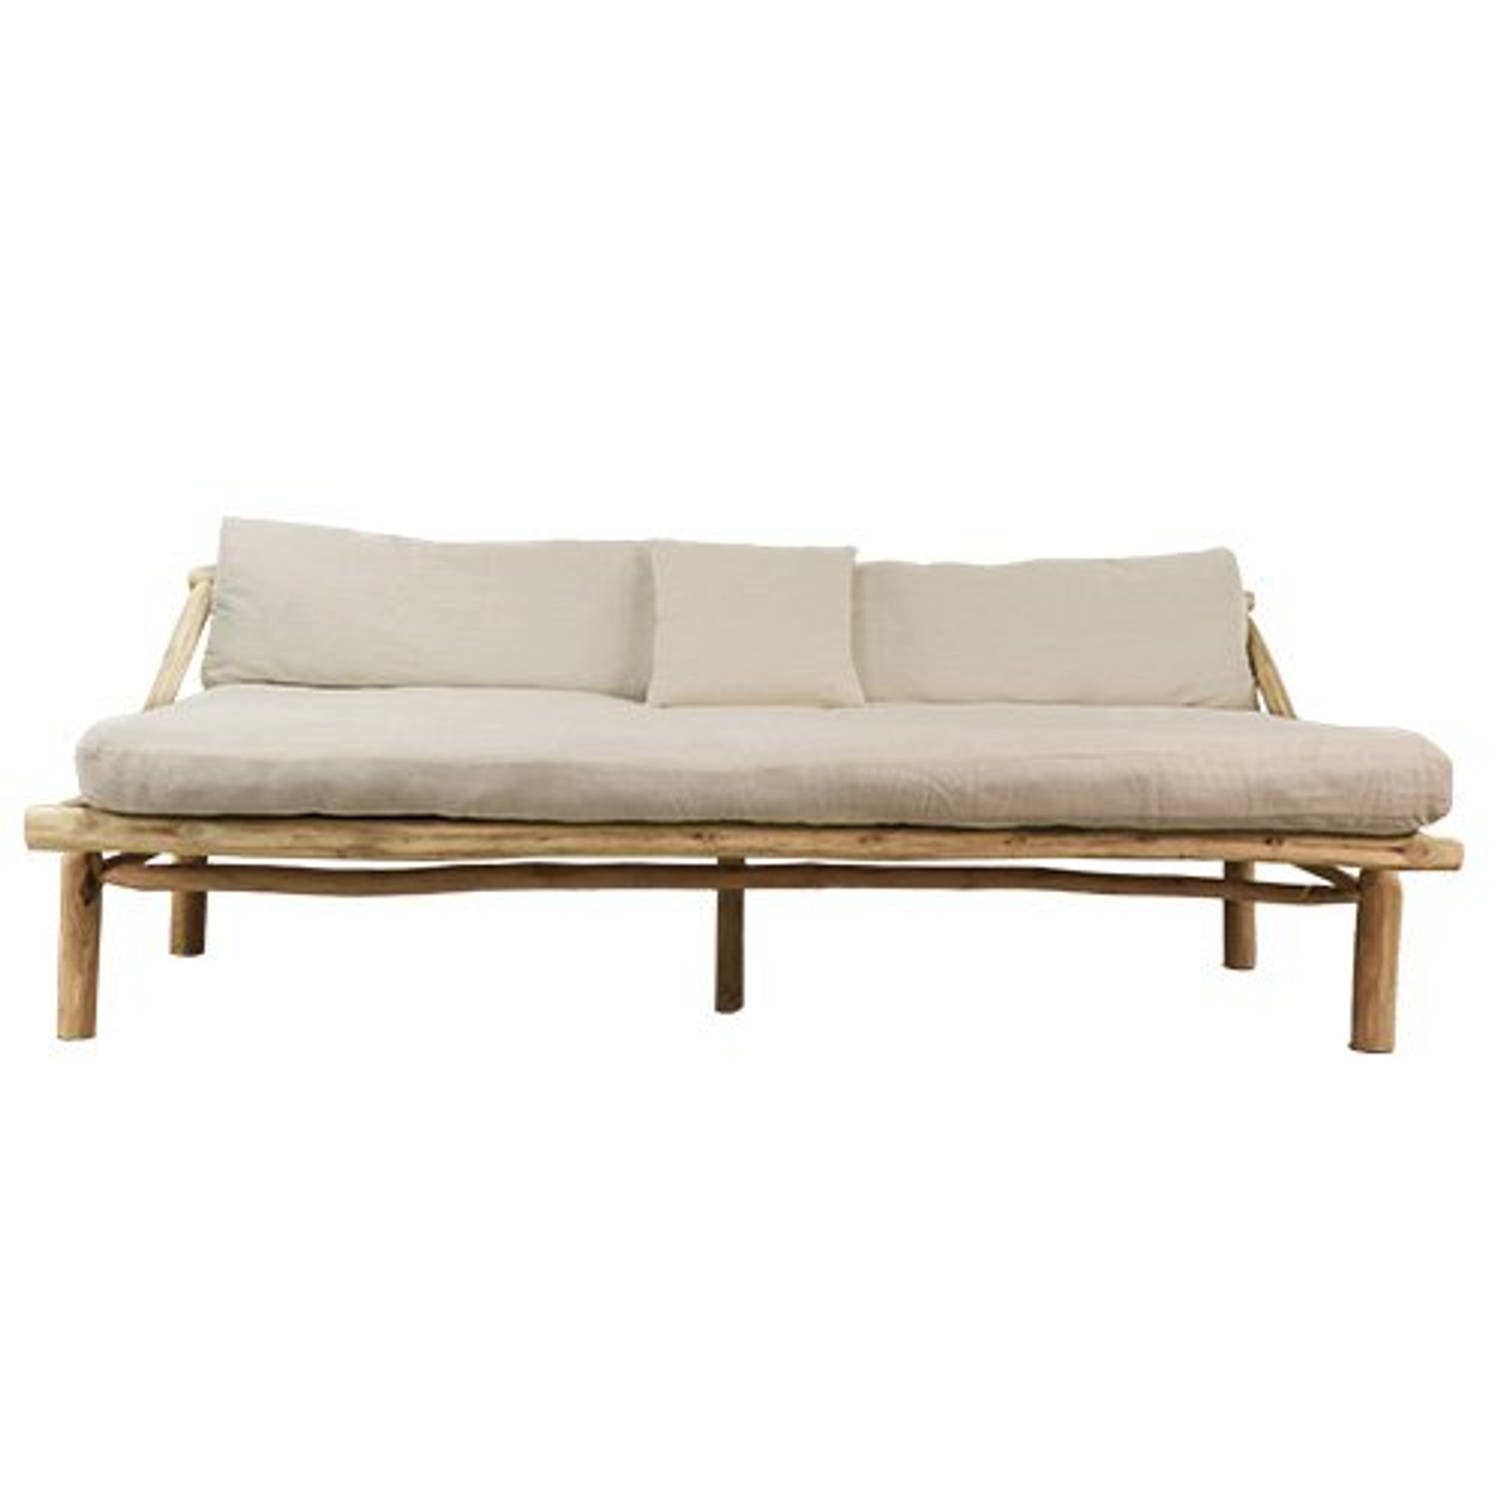 Van der Leeden Lounge sofa teak 200 cm